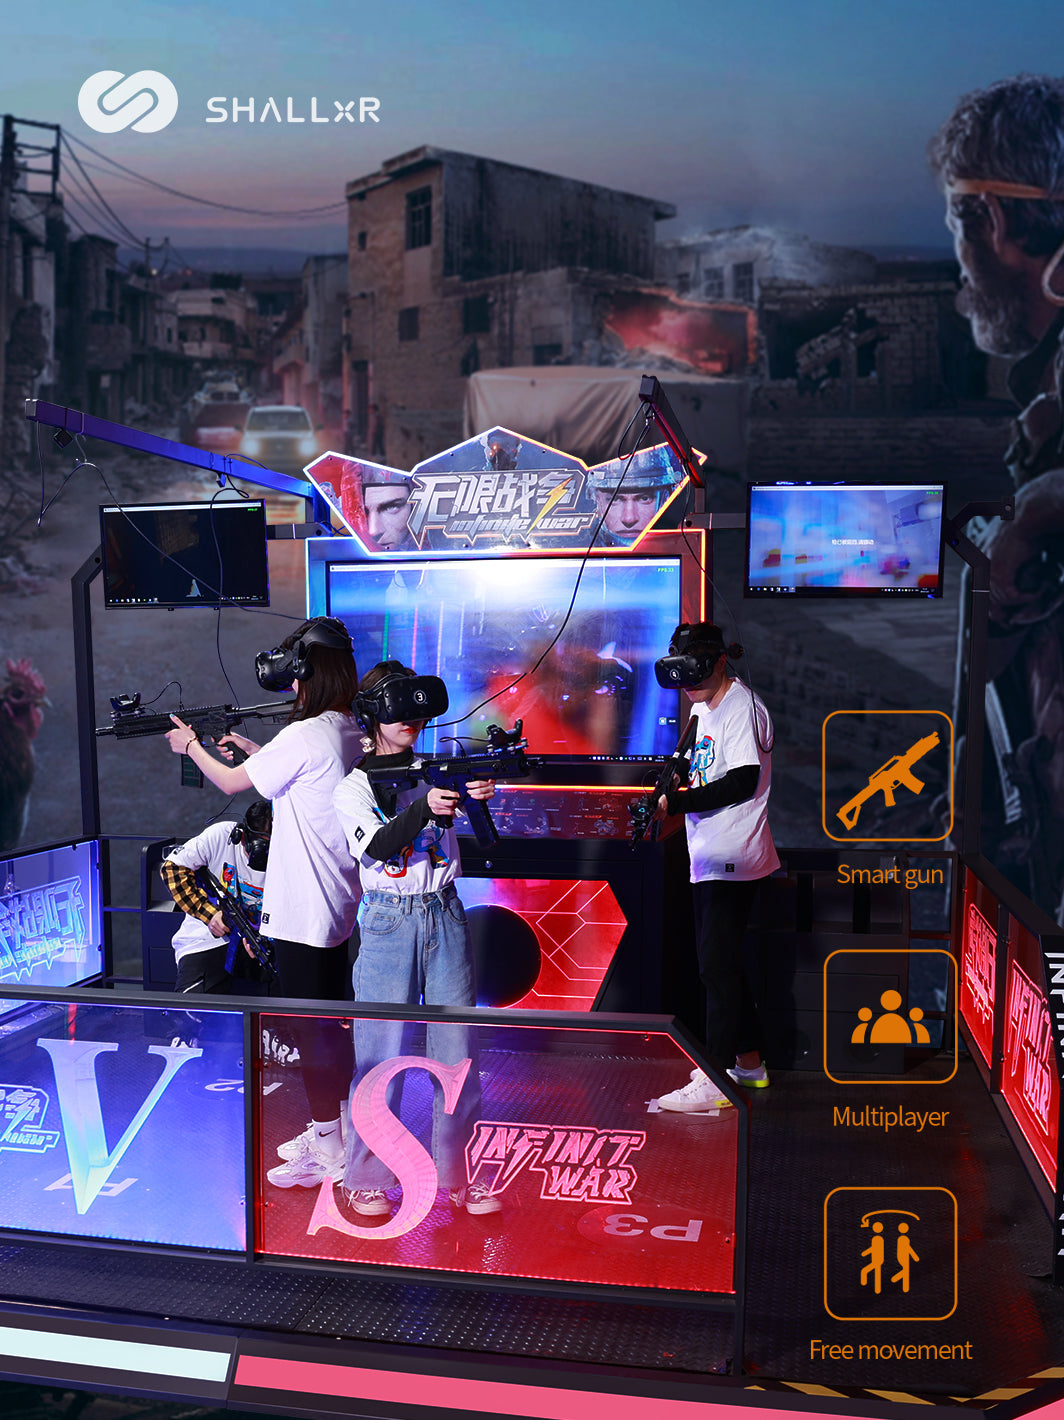 Arbejdsgiver Elevator rigtig meget Infinite war VR arena for multiplayers – ShallxR